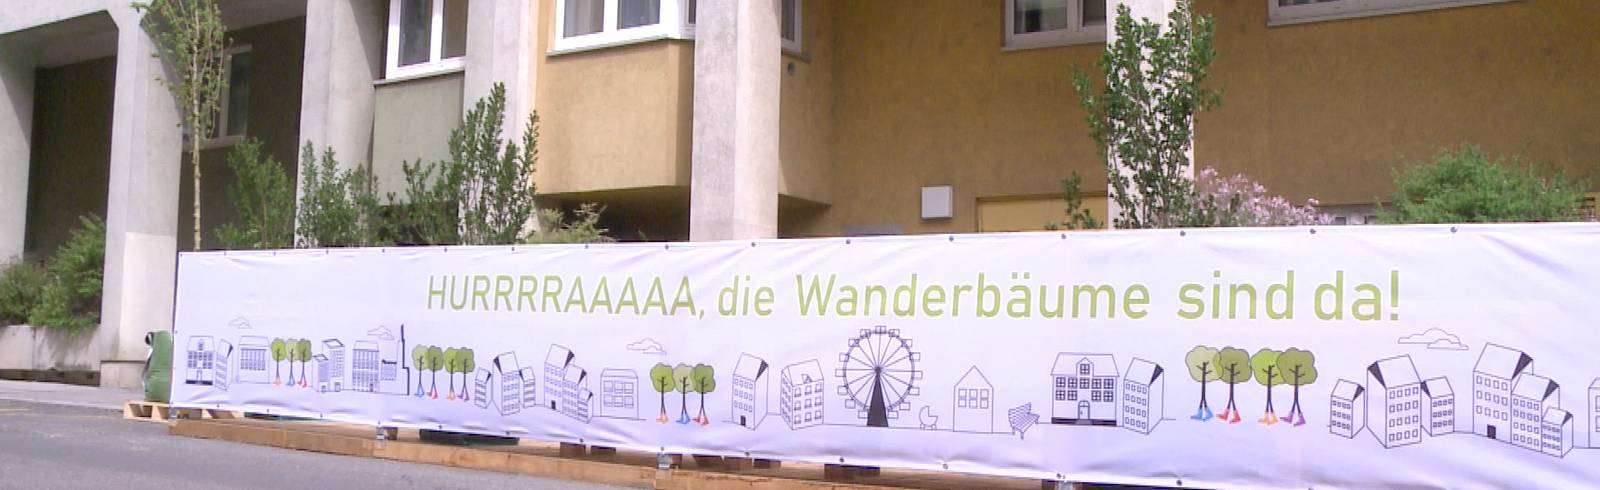 W24-Bezirksflash: Wanderbaumallee